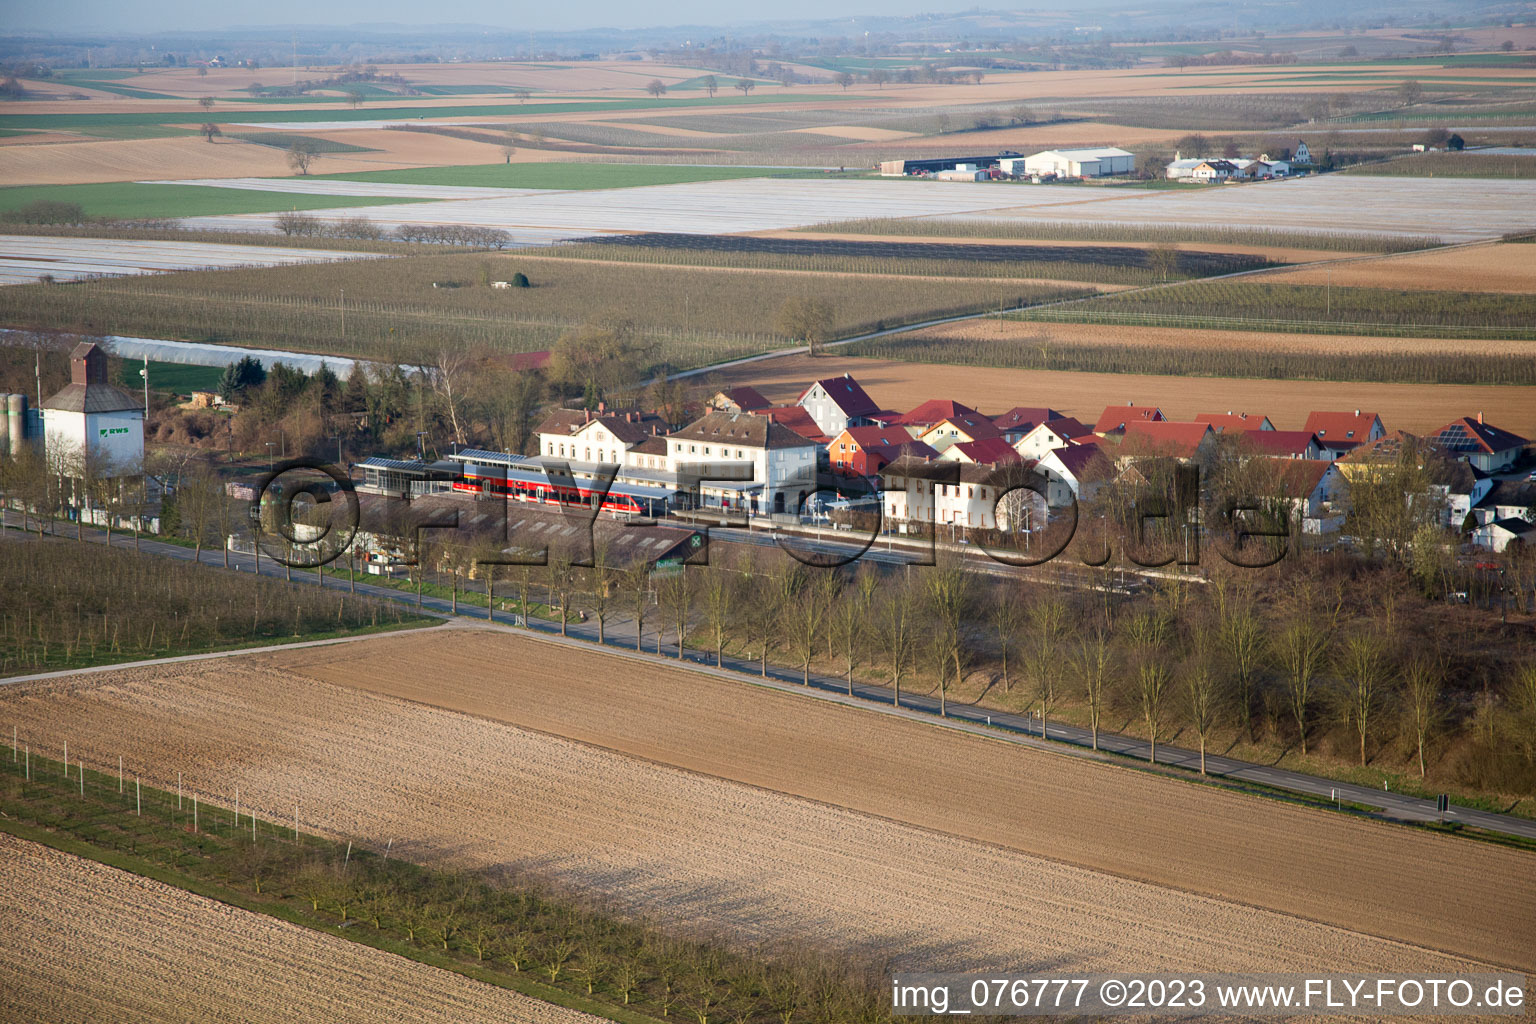 Winden dans le département Rhénanie-Palatinat, Allemagne vu d'un drone